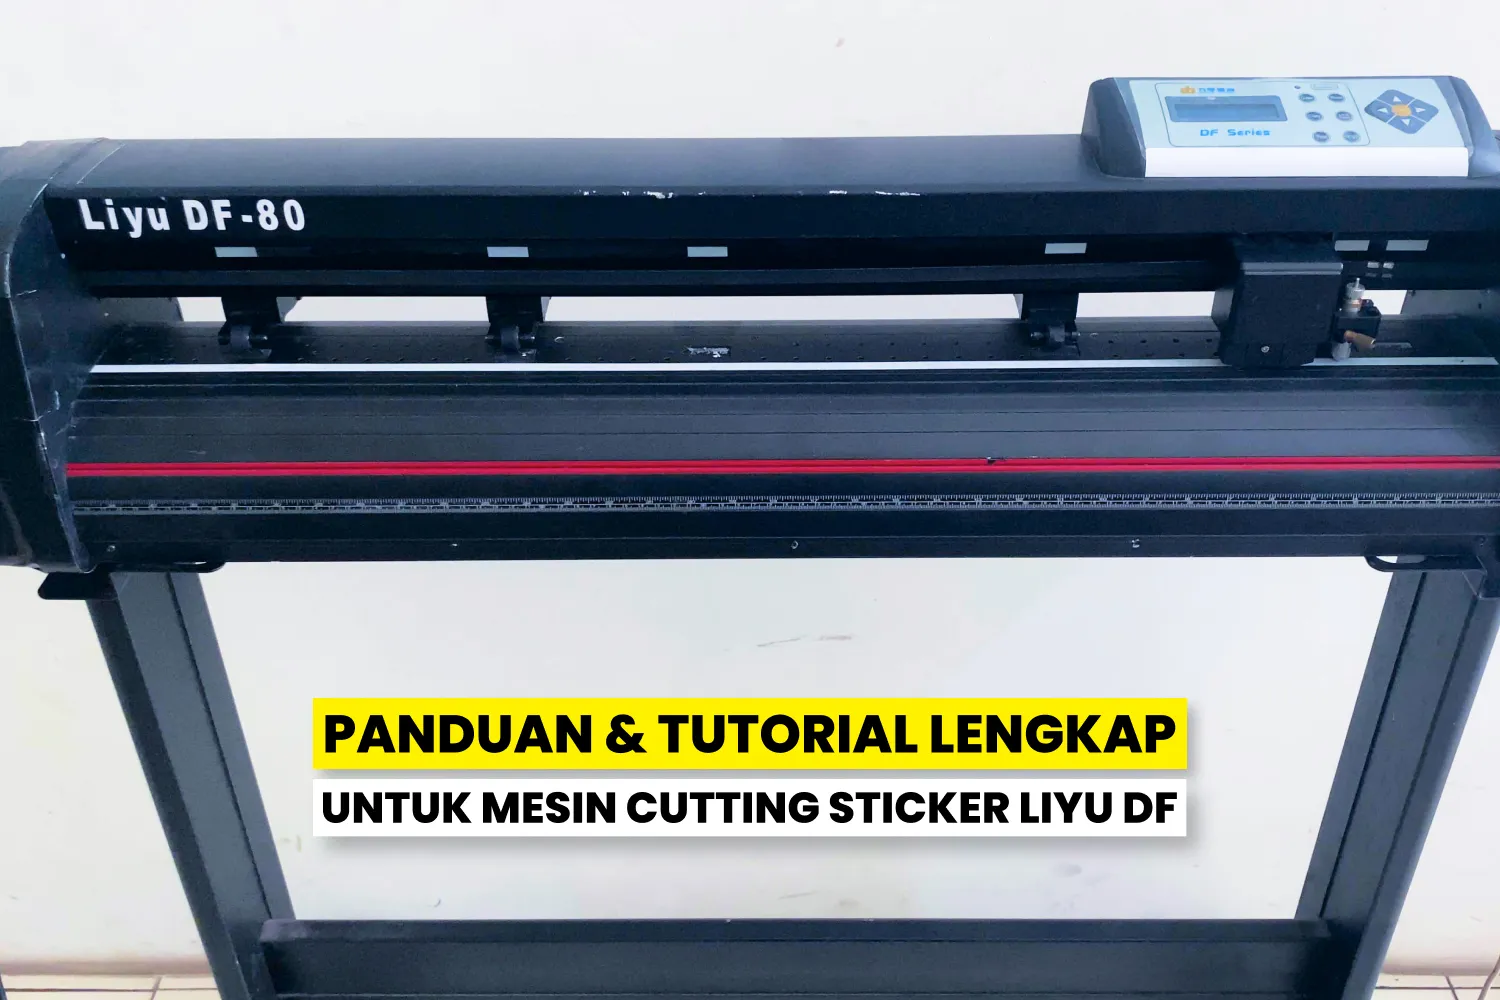 Tutorial Lengkap Menggunakan Mesin Cutting Sticker